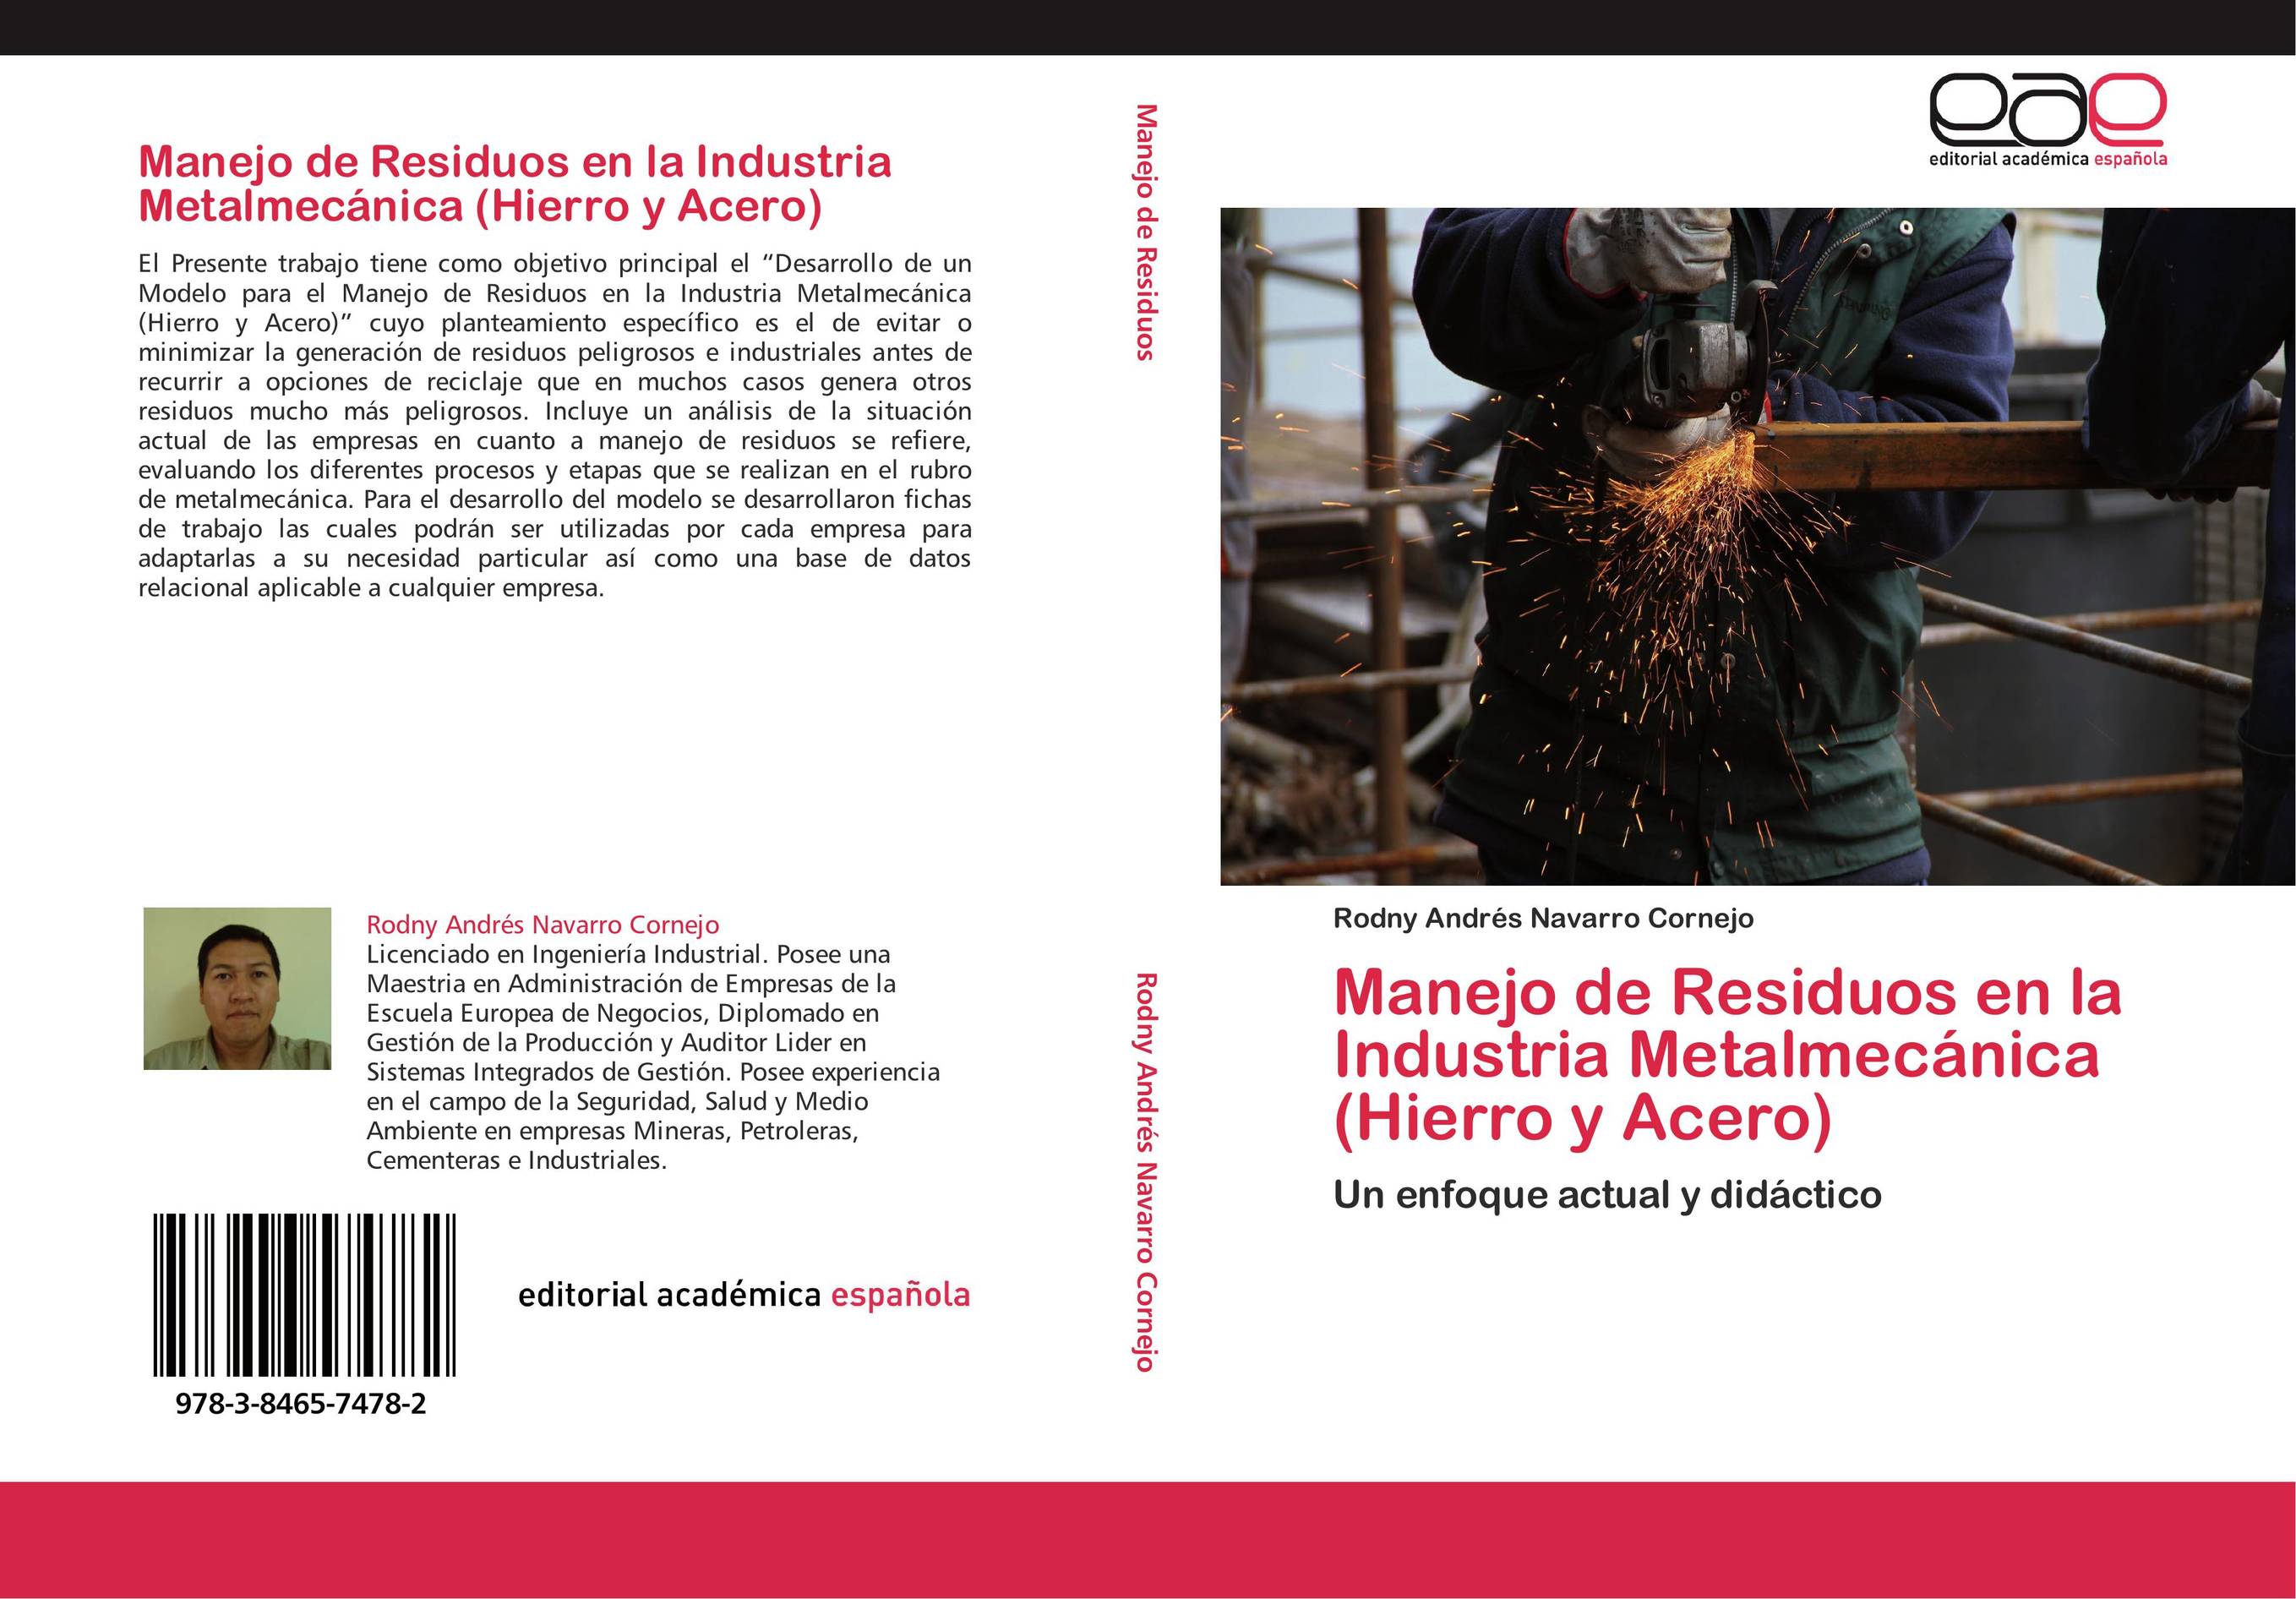 Manejo de Residuos en la Industria Metalmecánica (Hierro y Acero)